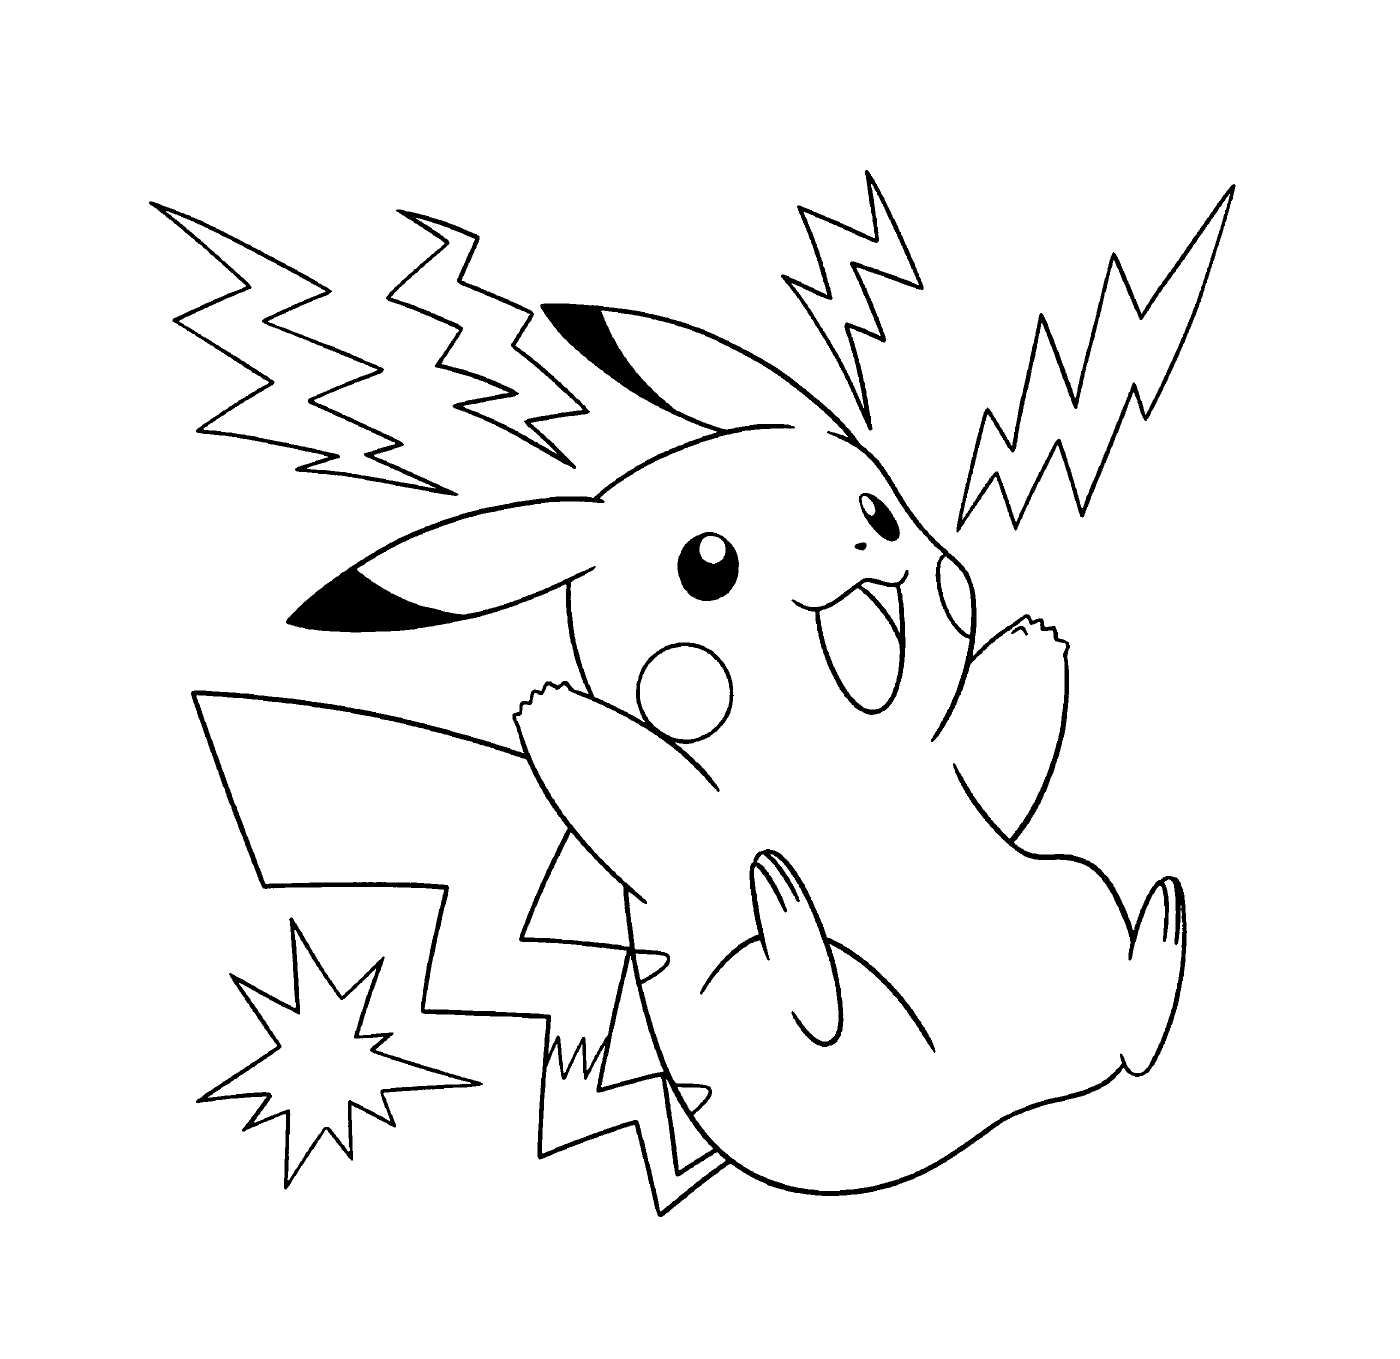   Pikachu, électrique et énergique 